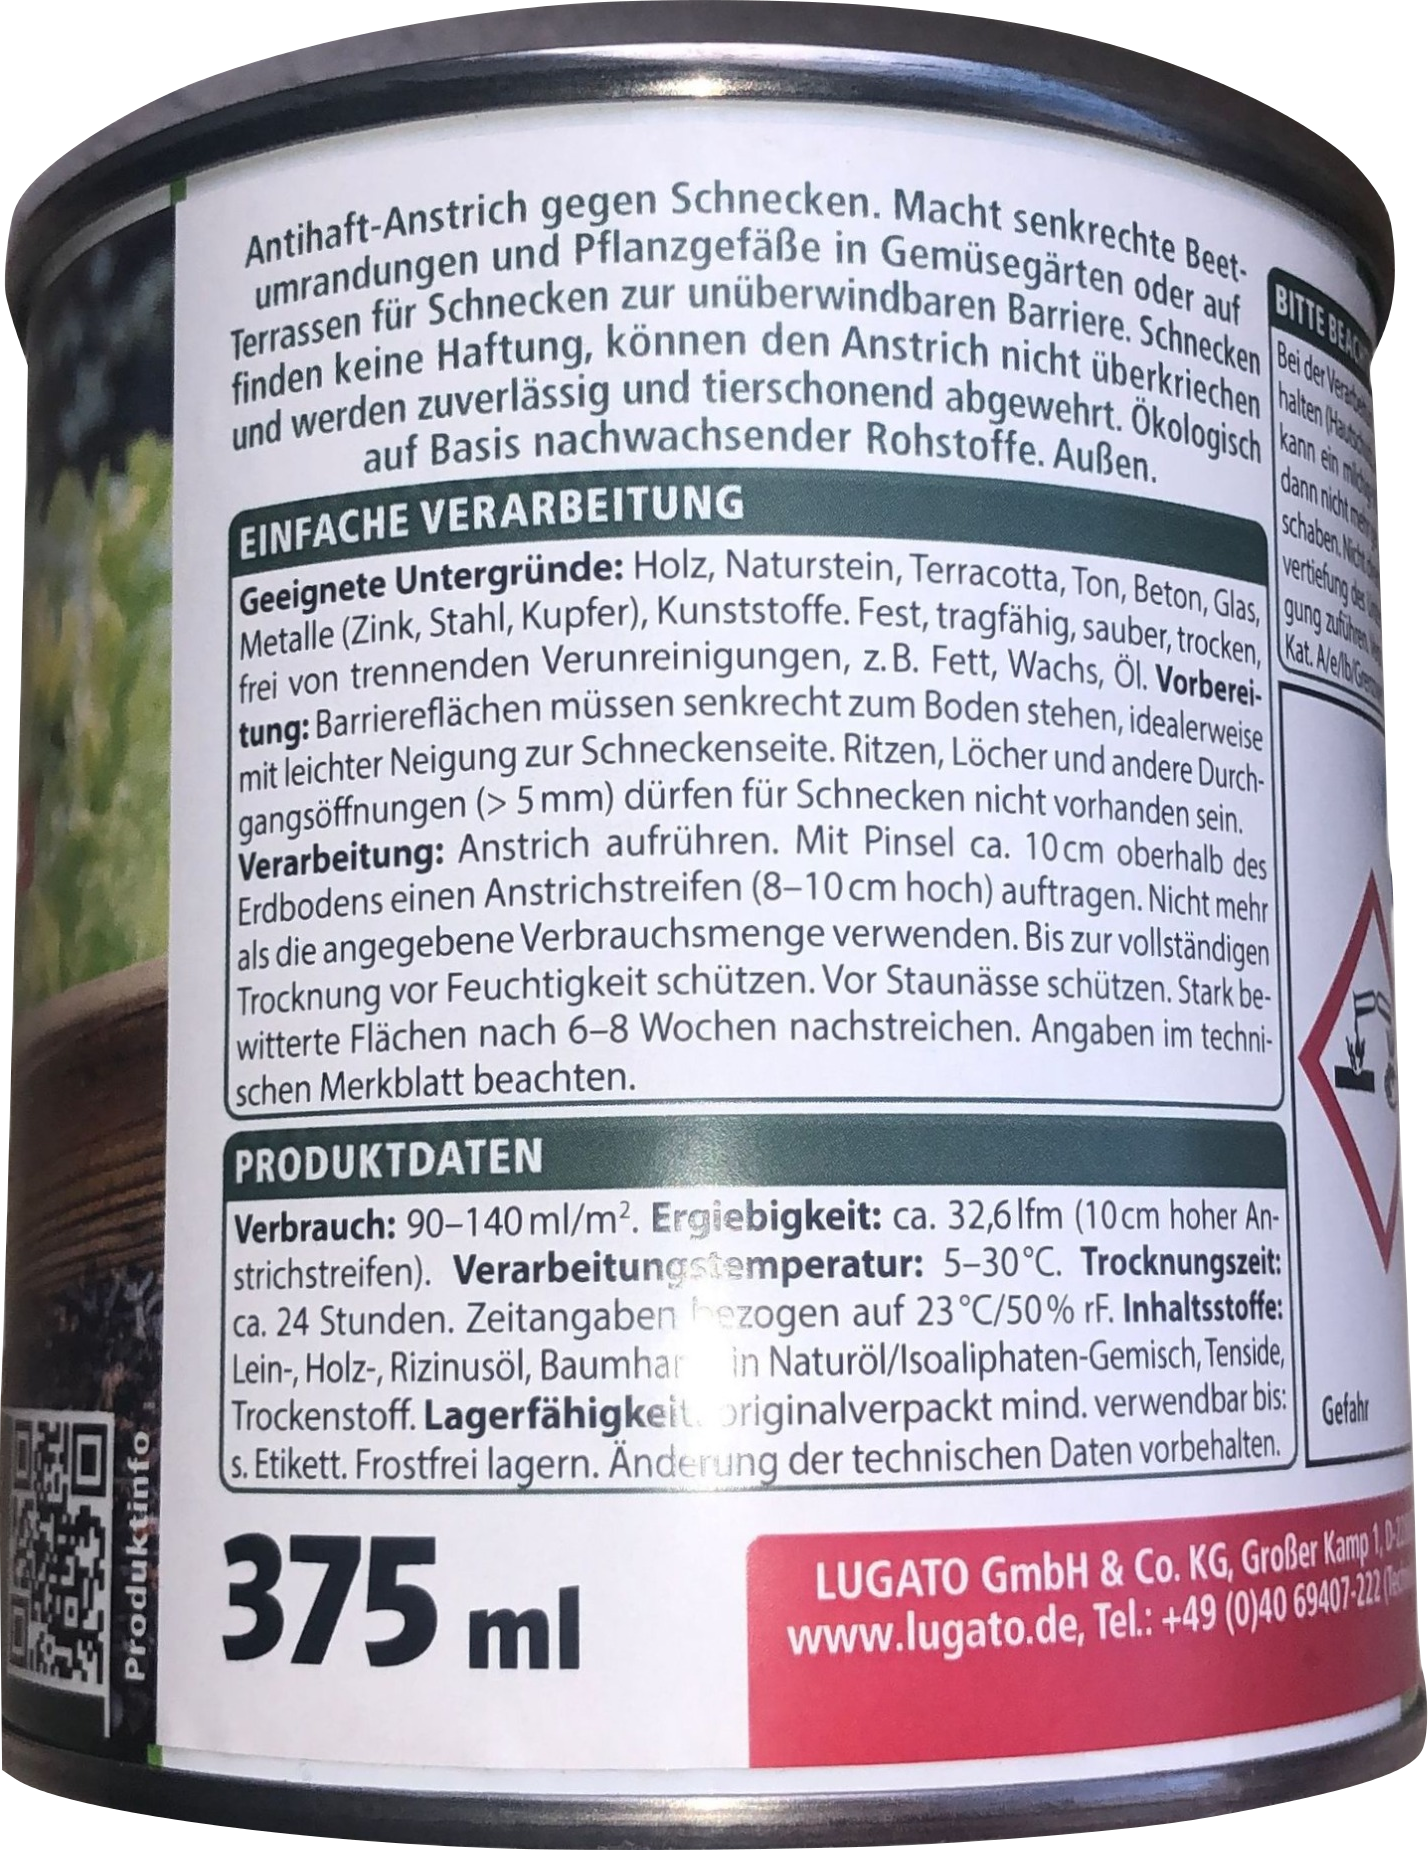 Schnexagon 375 ml